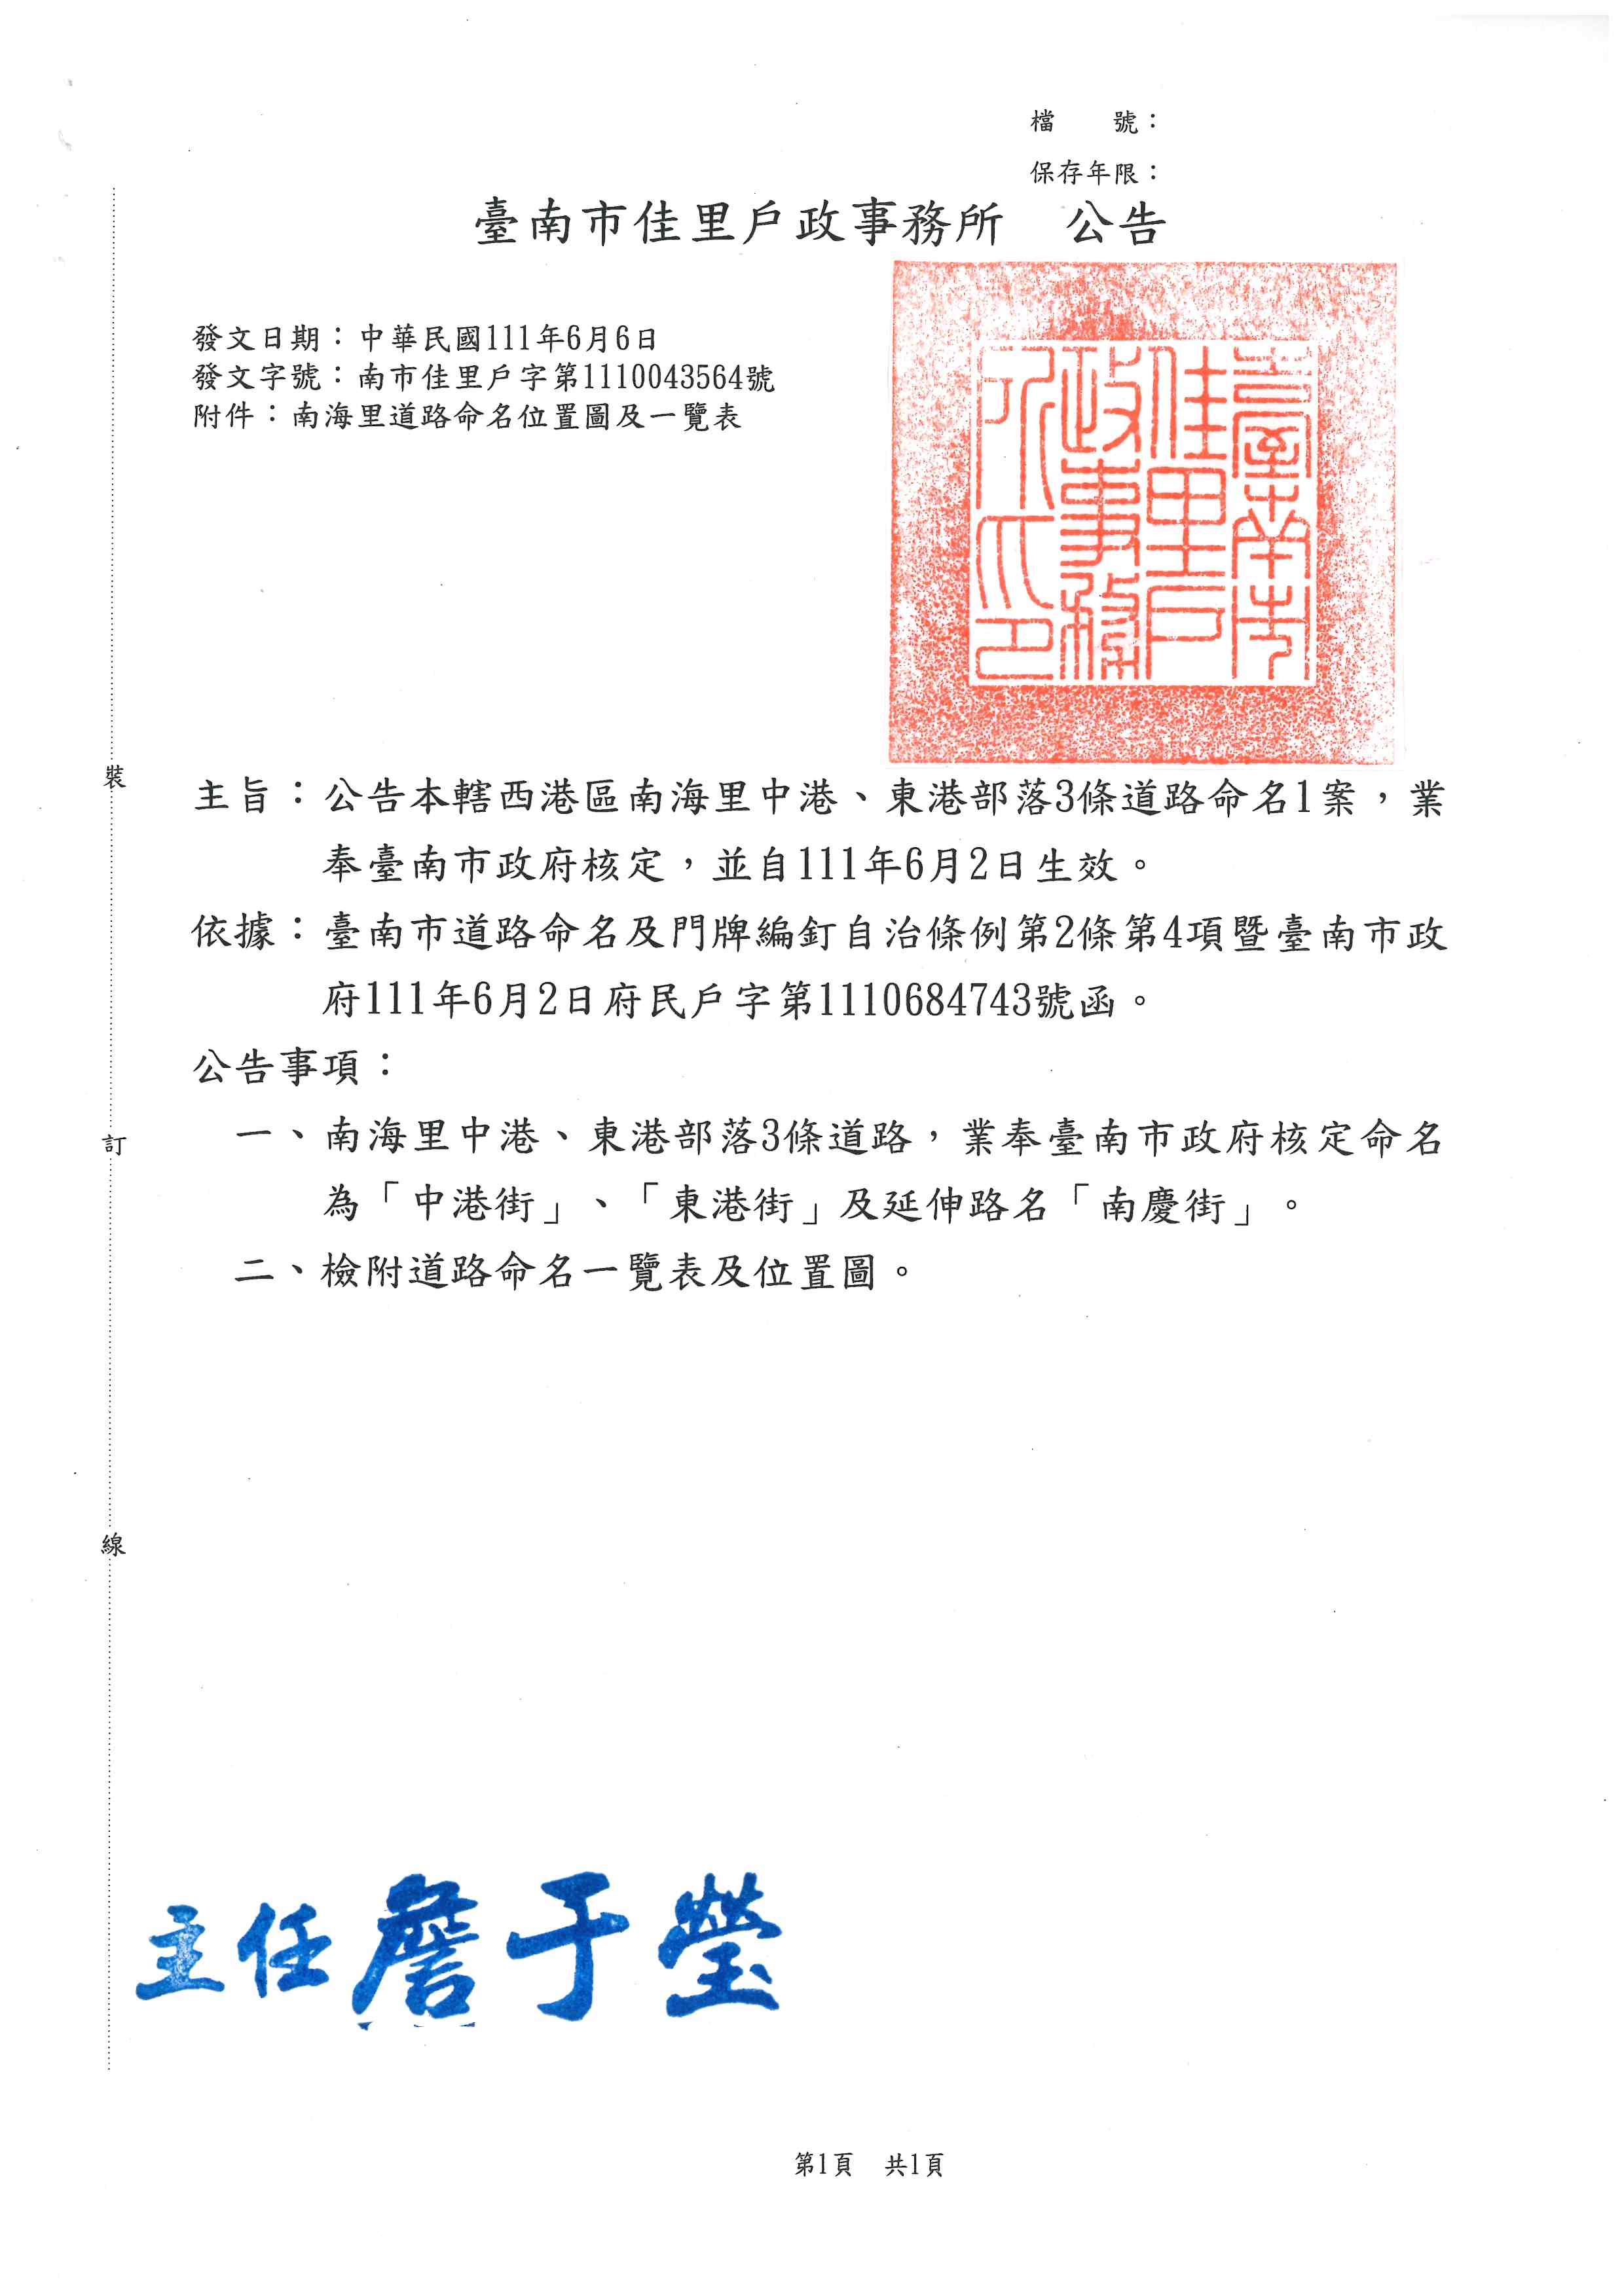 公告本轄西港區南海里中港、東港部落3條道路命名1案，業奉臺南市政府核定，並自111年6月2日生效。